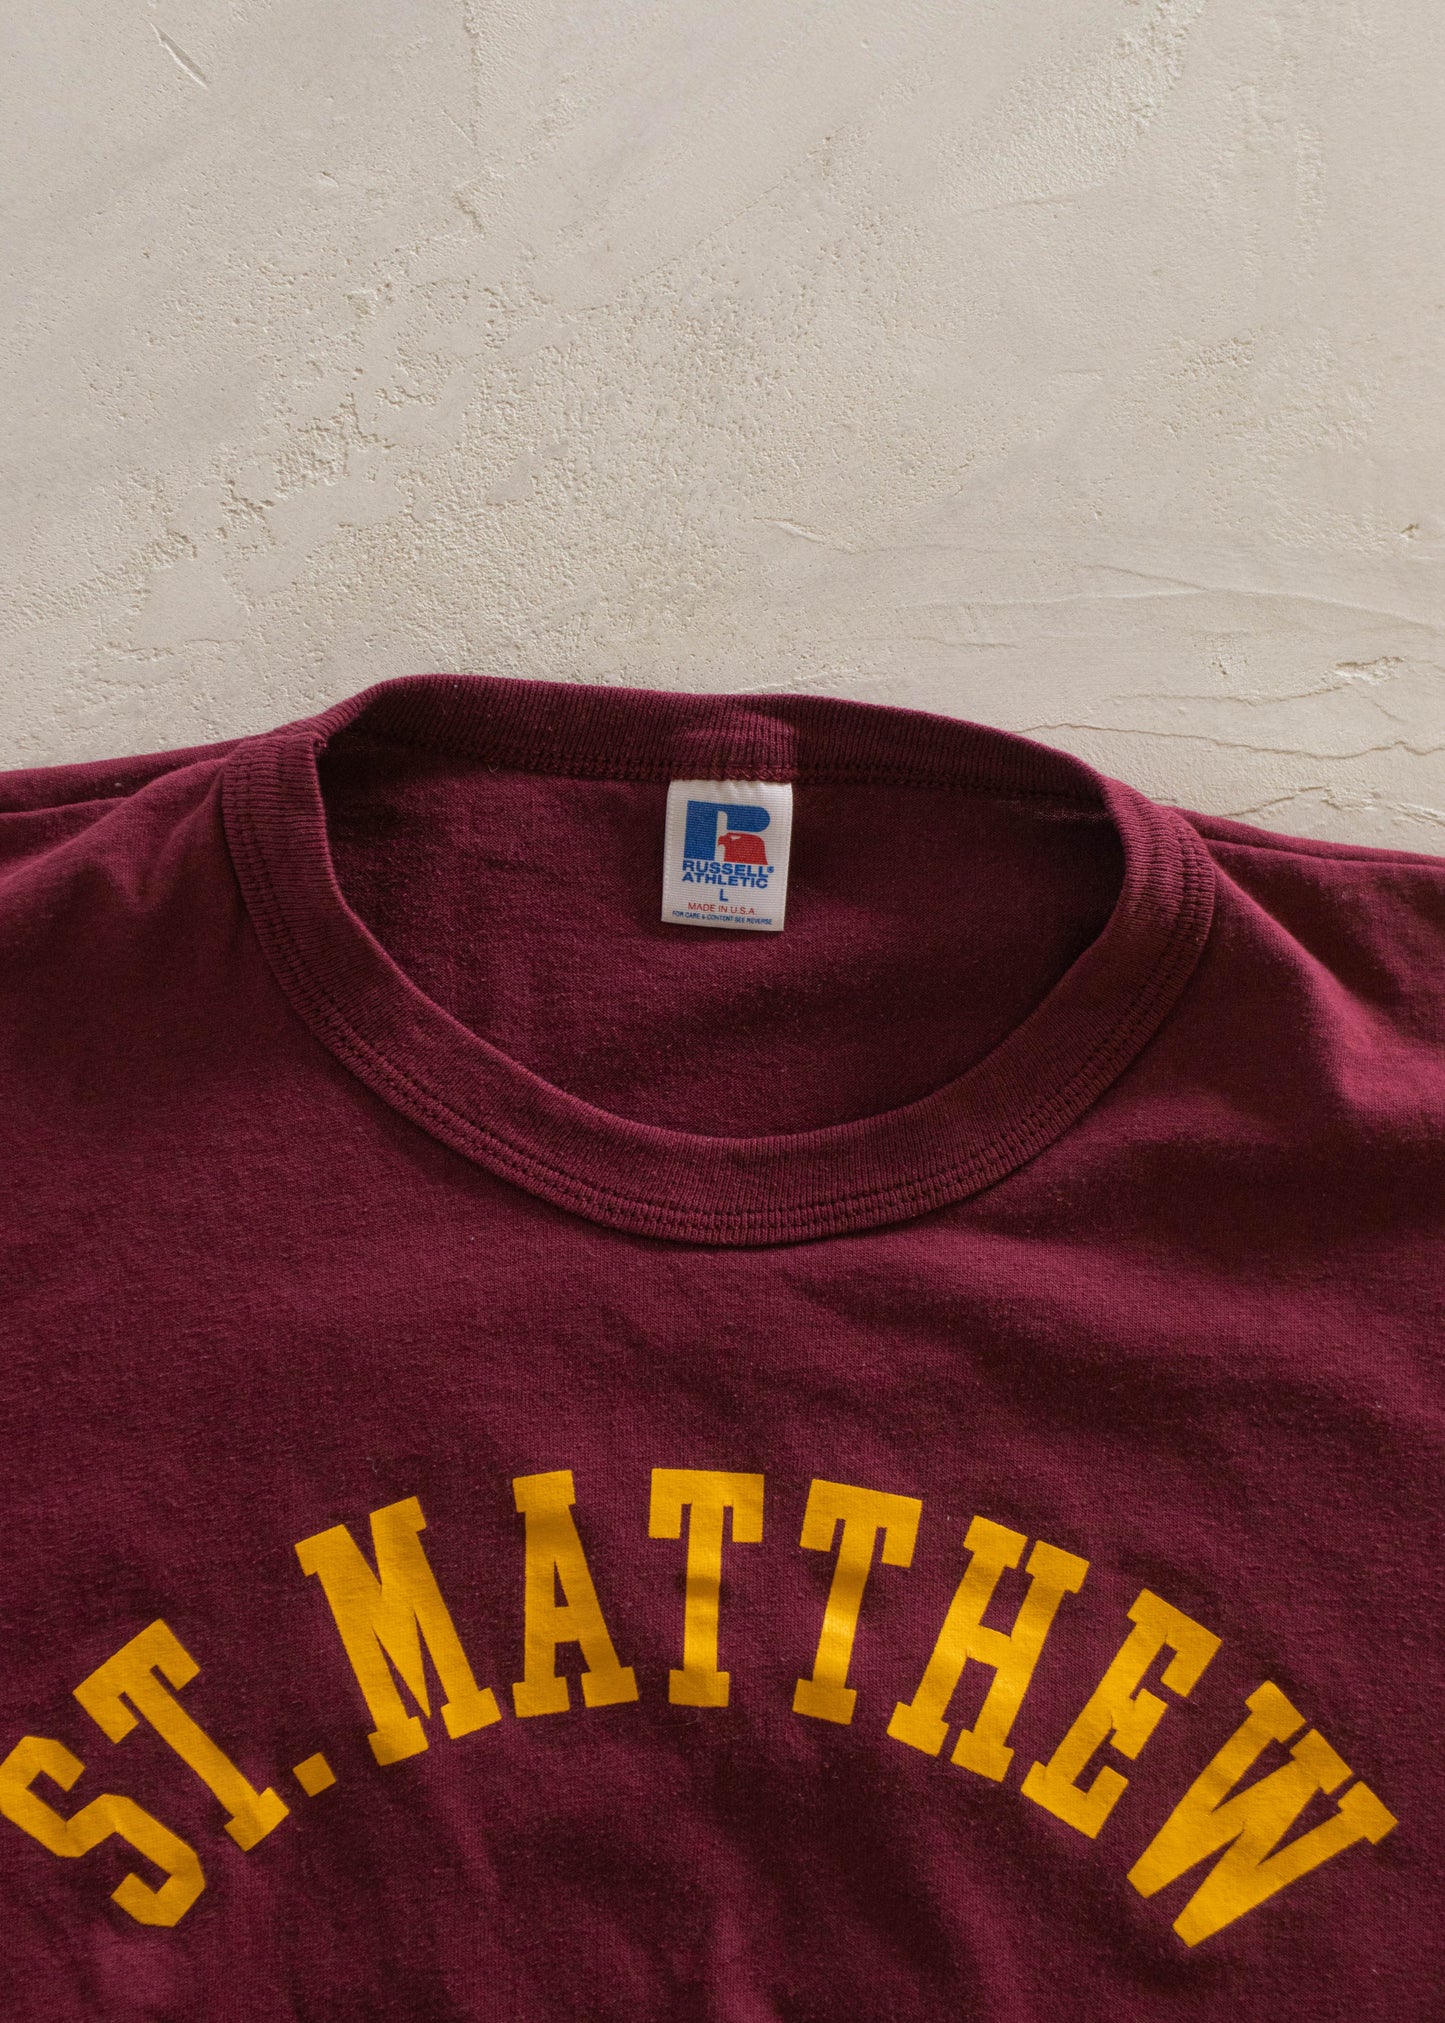 1980s Russel Athletic St-Matthew Souvenir T-Shirt Size M/L